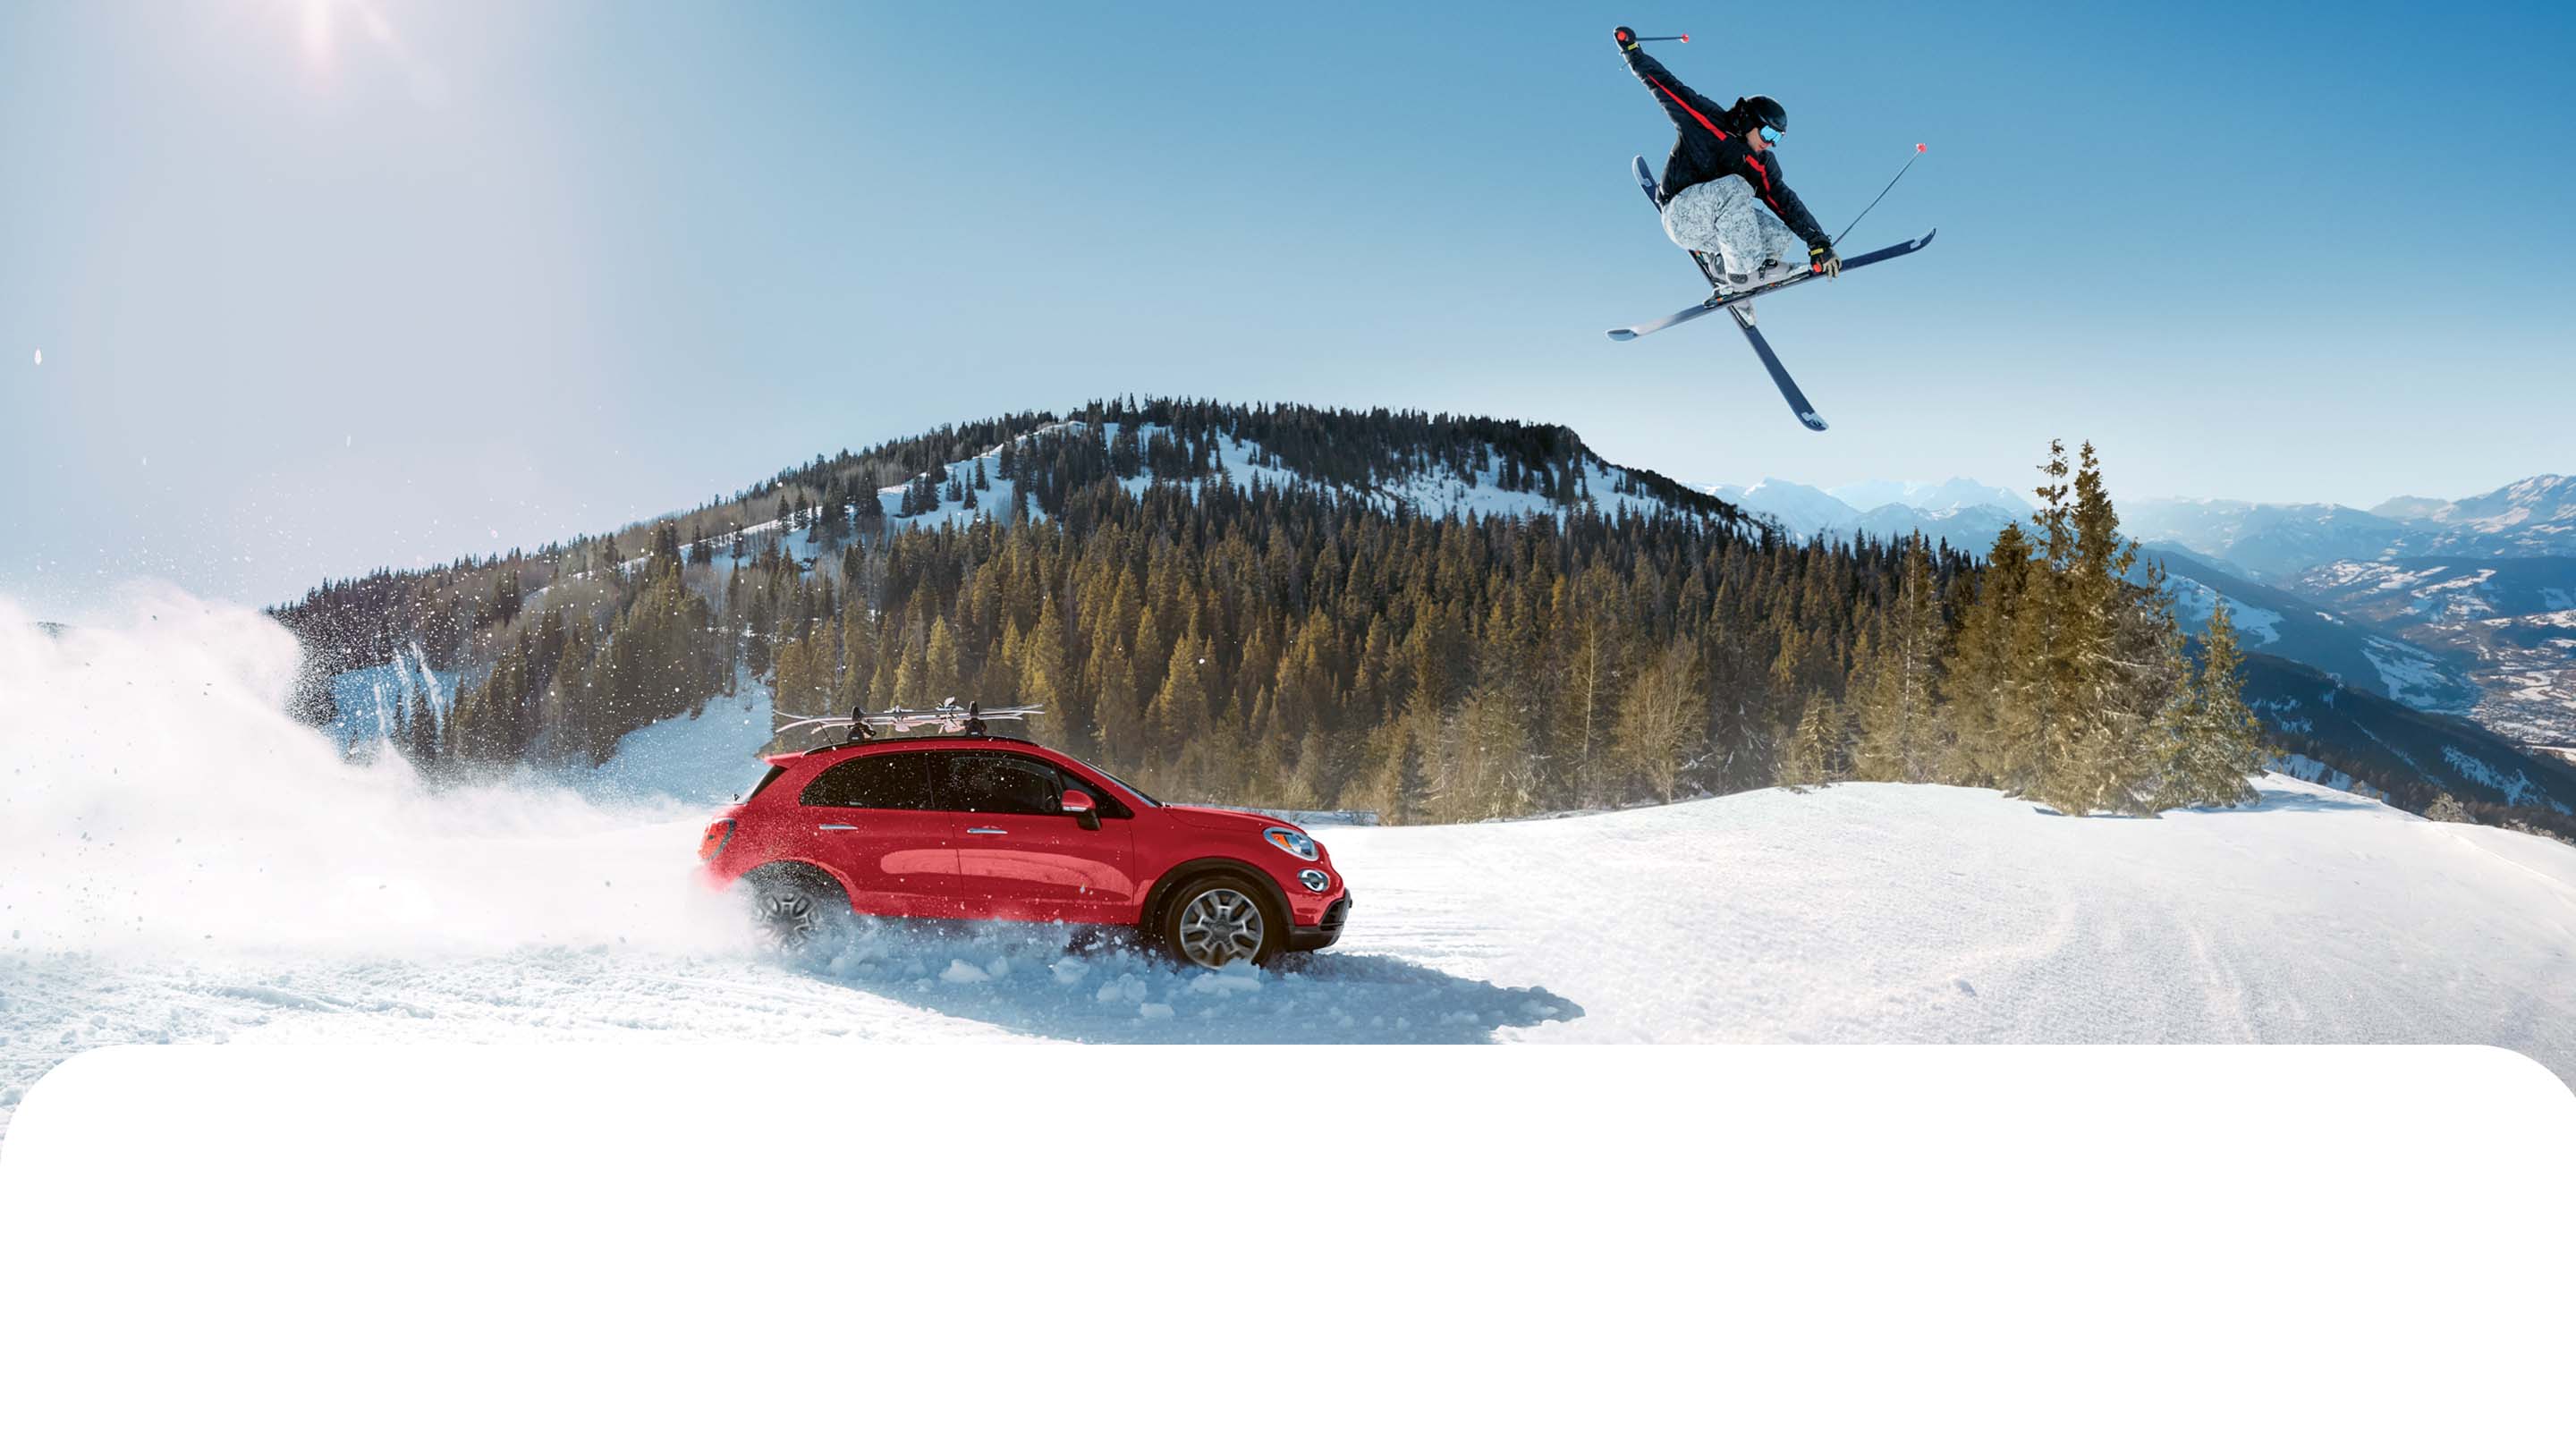 Perfil del lado del pasajero de un Fiat 500X Trekking 2022 rojo con equipamiento no original, circulando por un camino cubierto con mucha nieve, levantando polvo blanco mientras avanza, con un esquiador saltando por encima del vehículo e imponentes montañas de fondo.